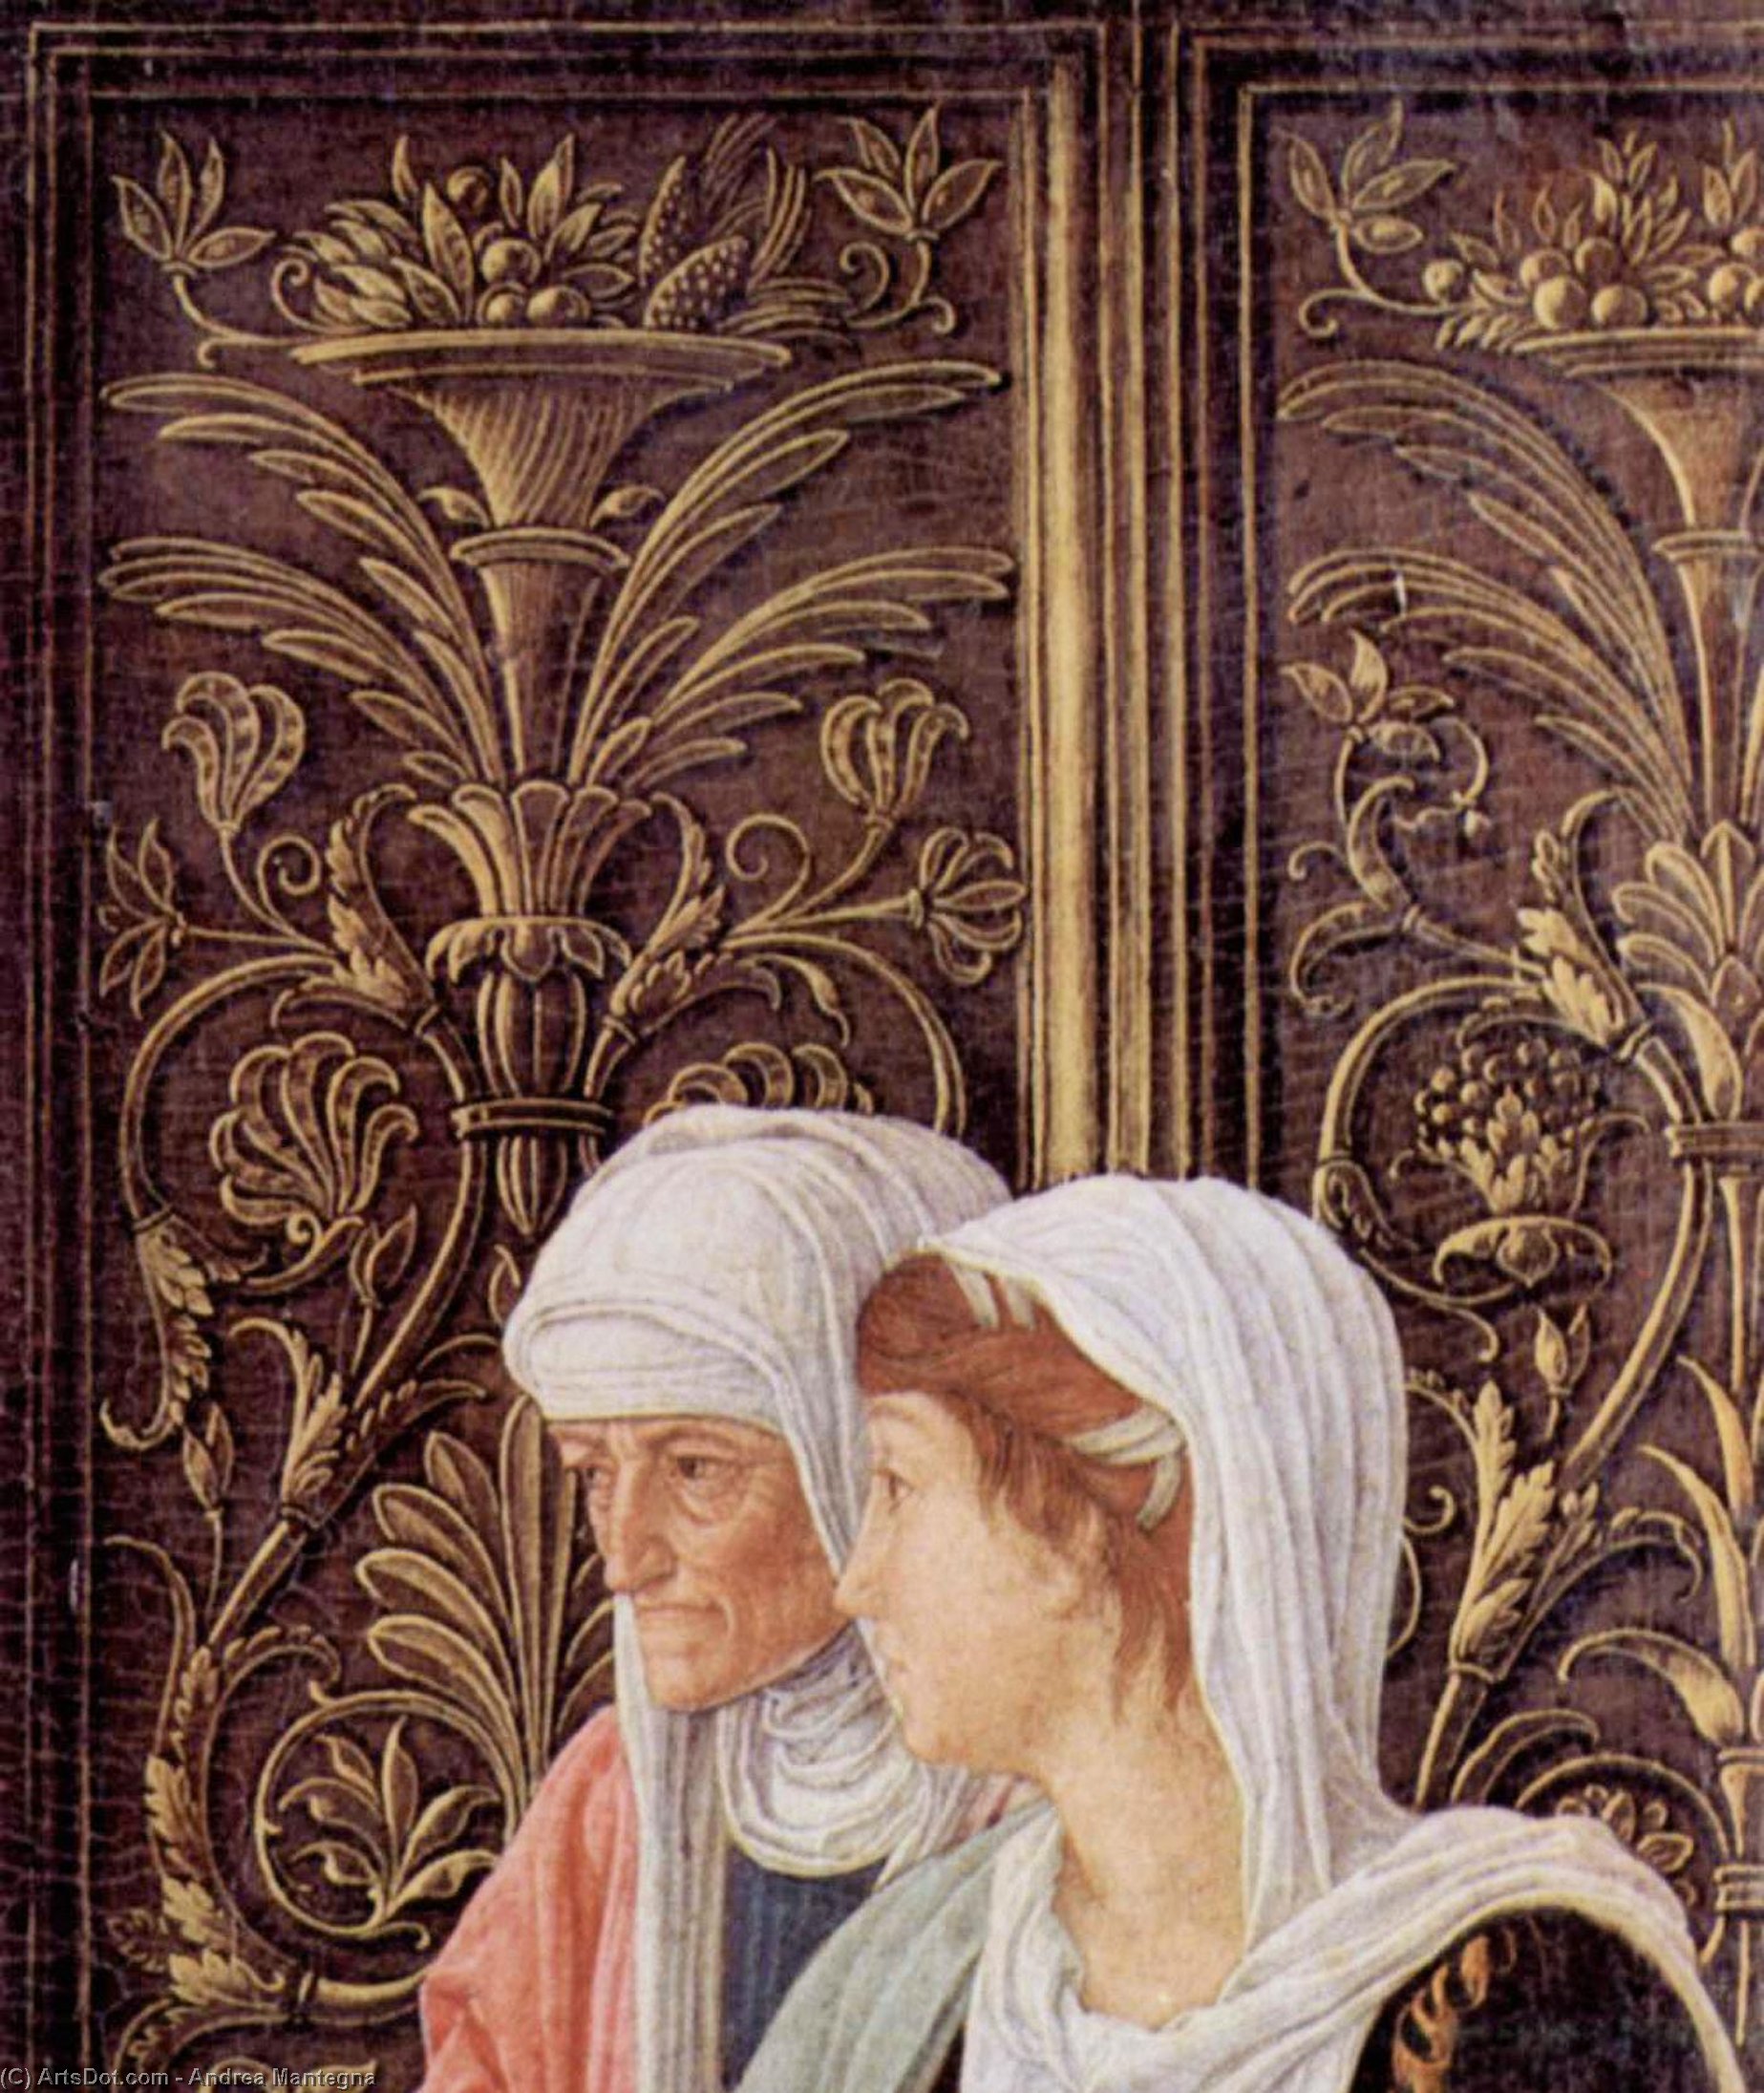 WikiOO.org - Encyclopedia of Fine Arts - Målning, konstverk Andrea Mantegna - The Circumsicion of jesus, detail